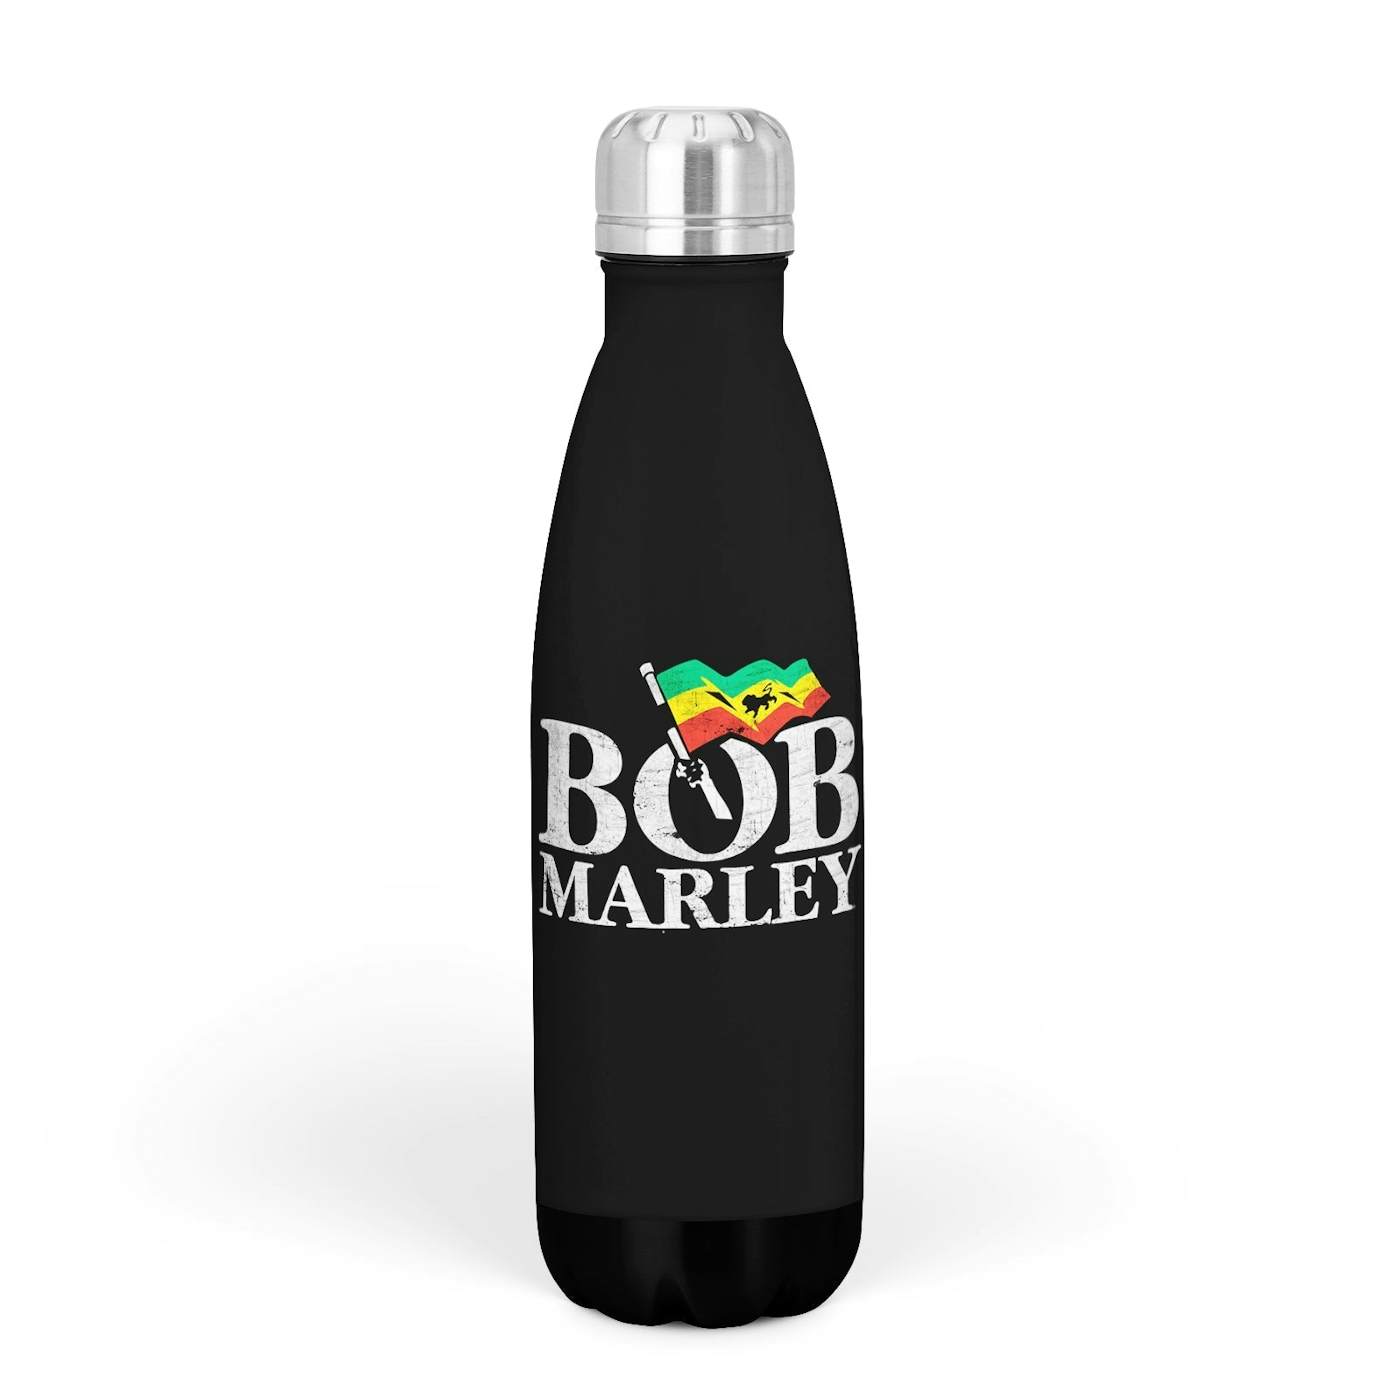 Rocksax Bob Marley Drink Bottle - Flag